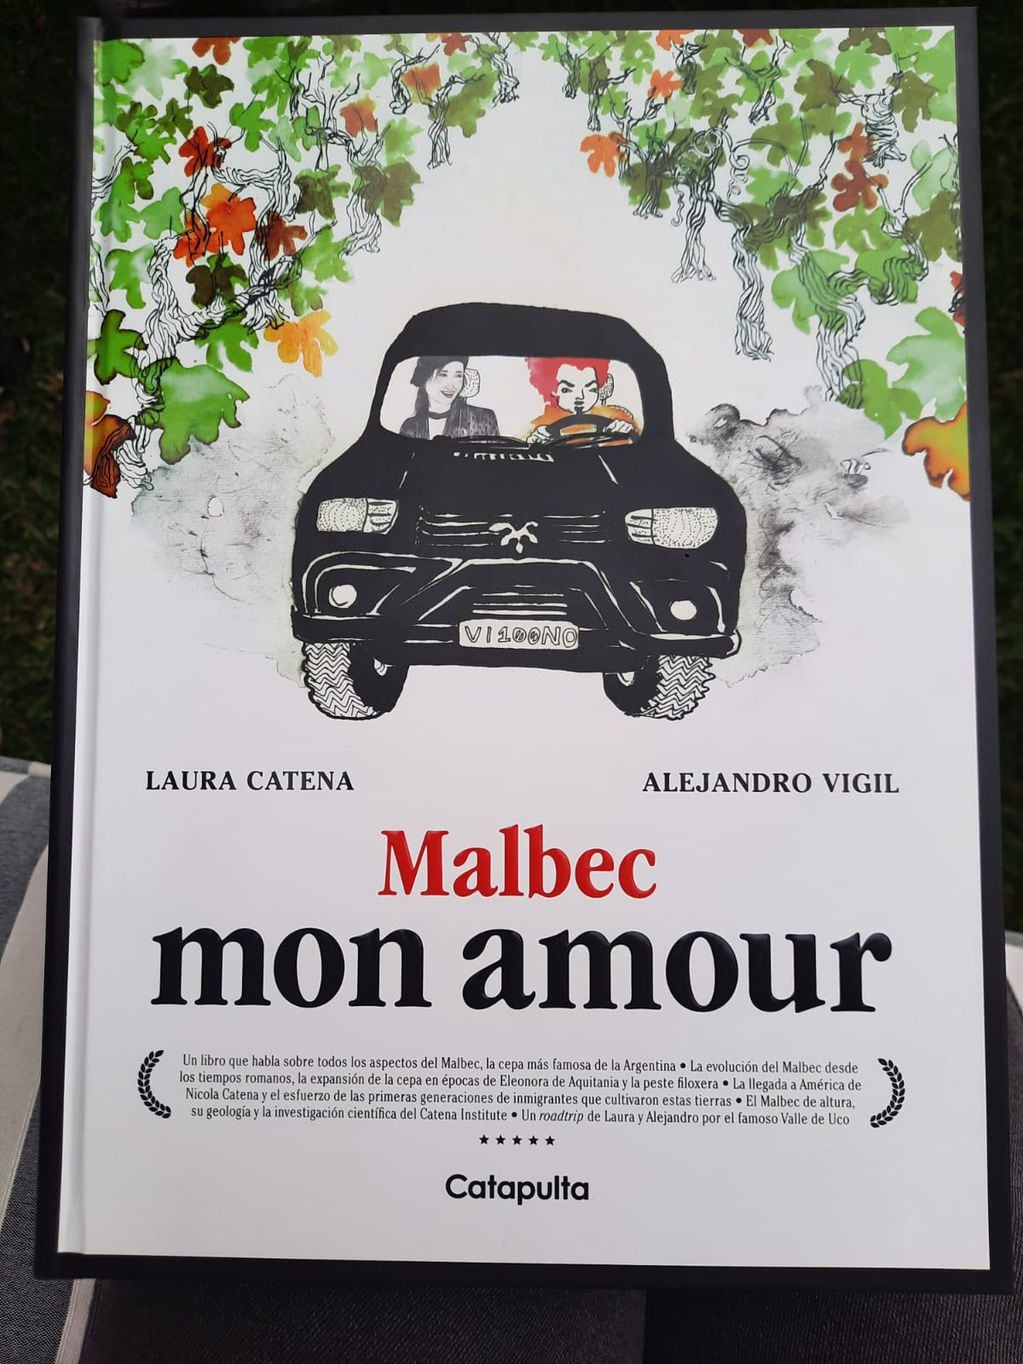 "Malbec mon amour" ya está disponible en su versión en español. - Los Andes